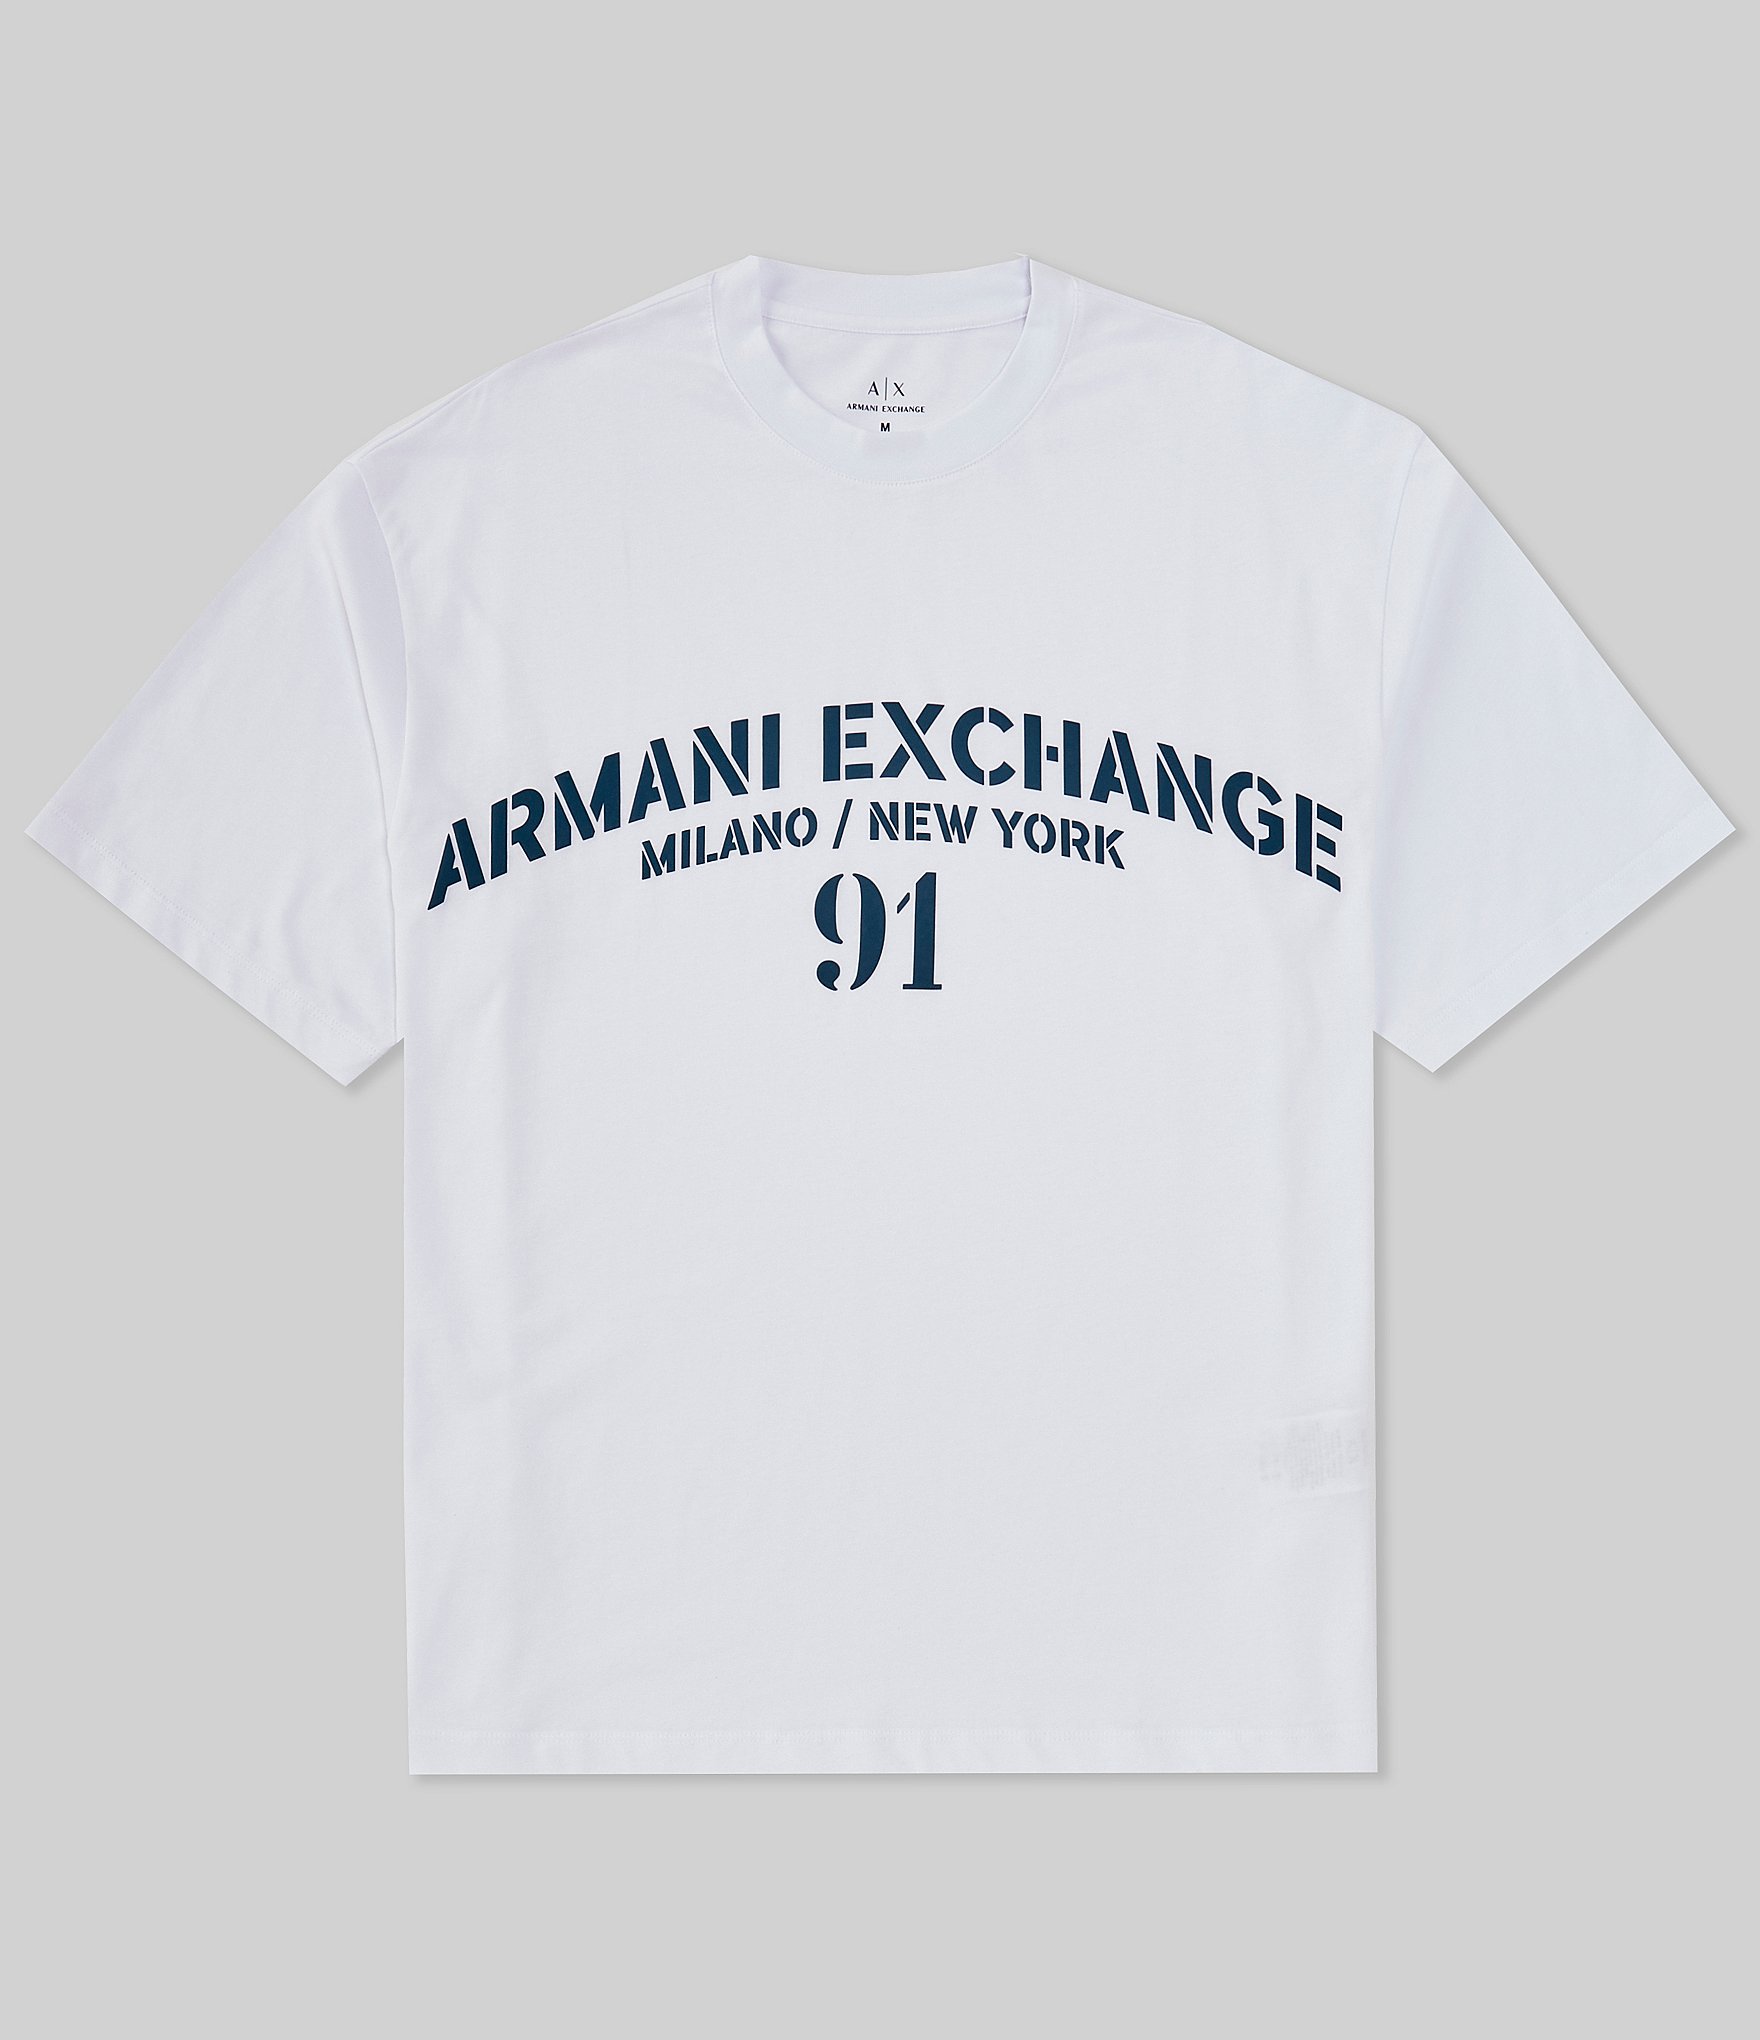 Armani Exchange Men T-Shirt Black / XXL